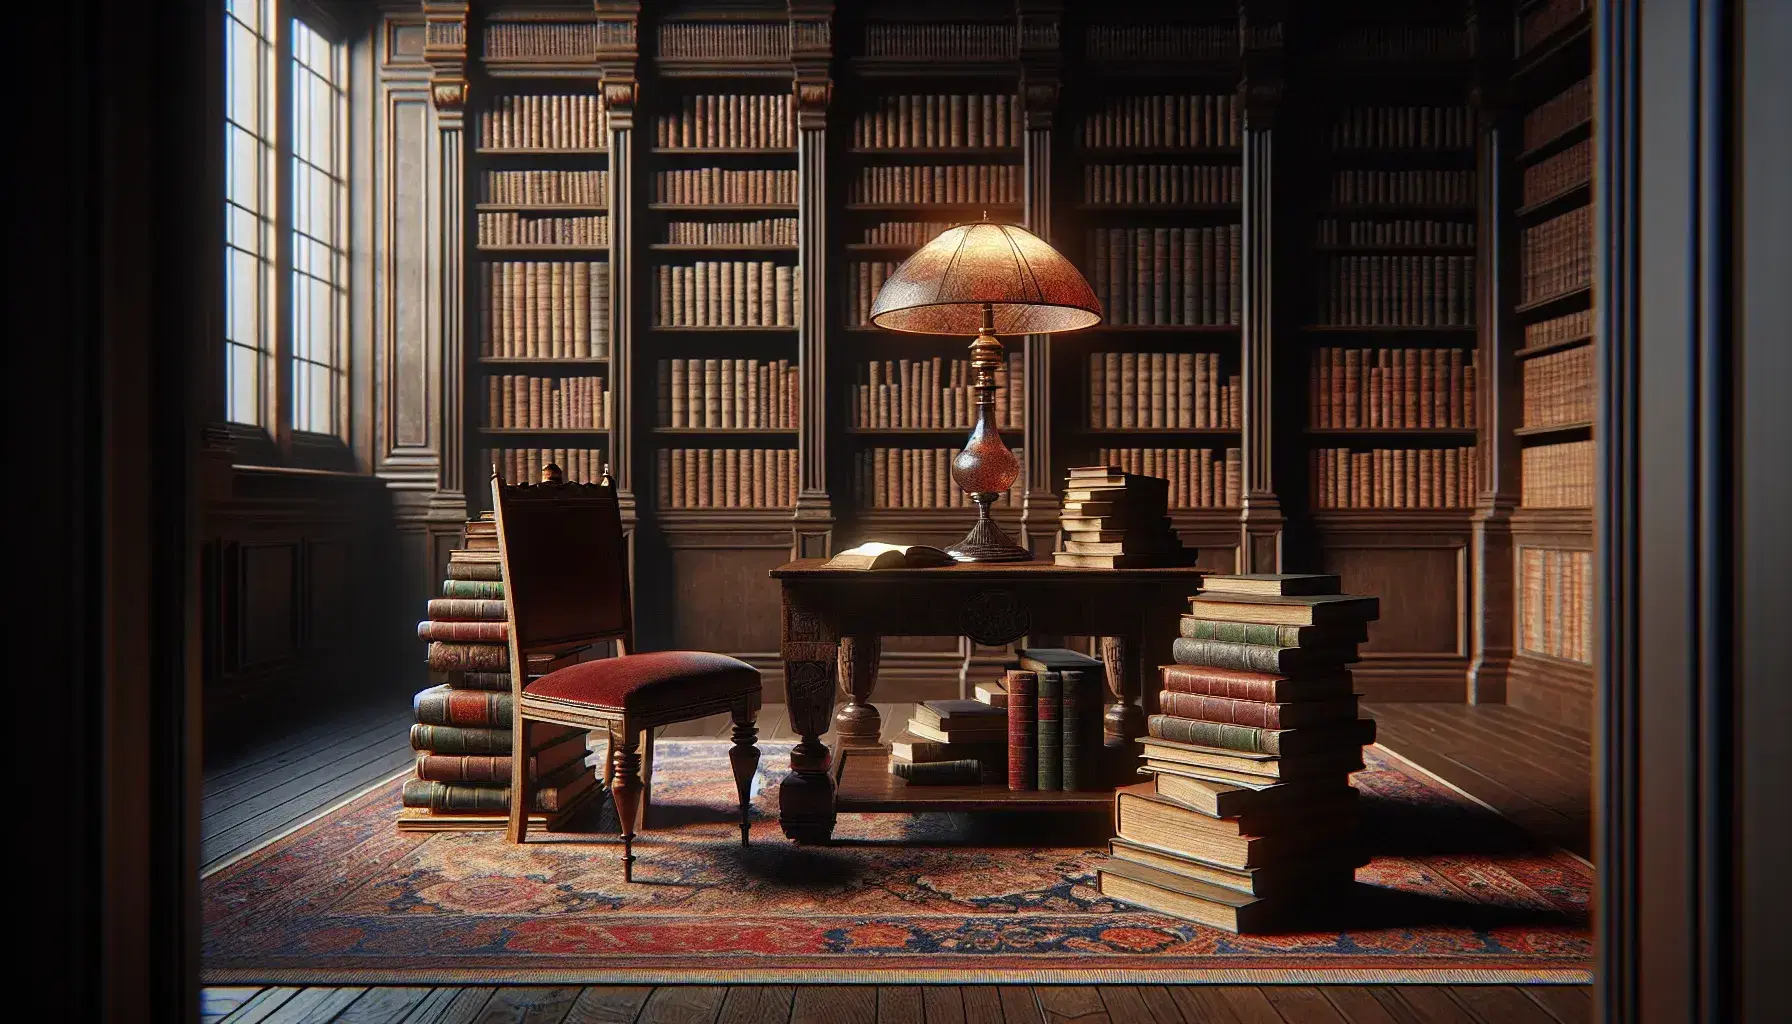 Biblioteca antigua con estanterías de madera oscura llenas de libros, mesa central con lámpara y libros apilados, silla con asiento de terciopelo rojo y alfombra persa.